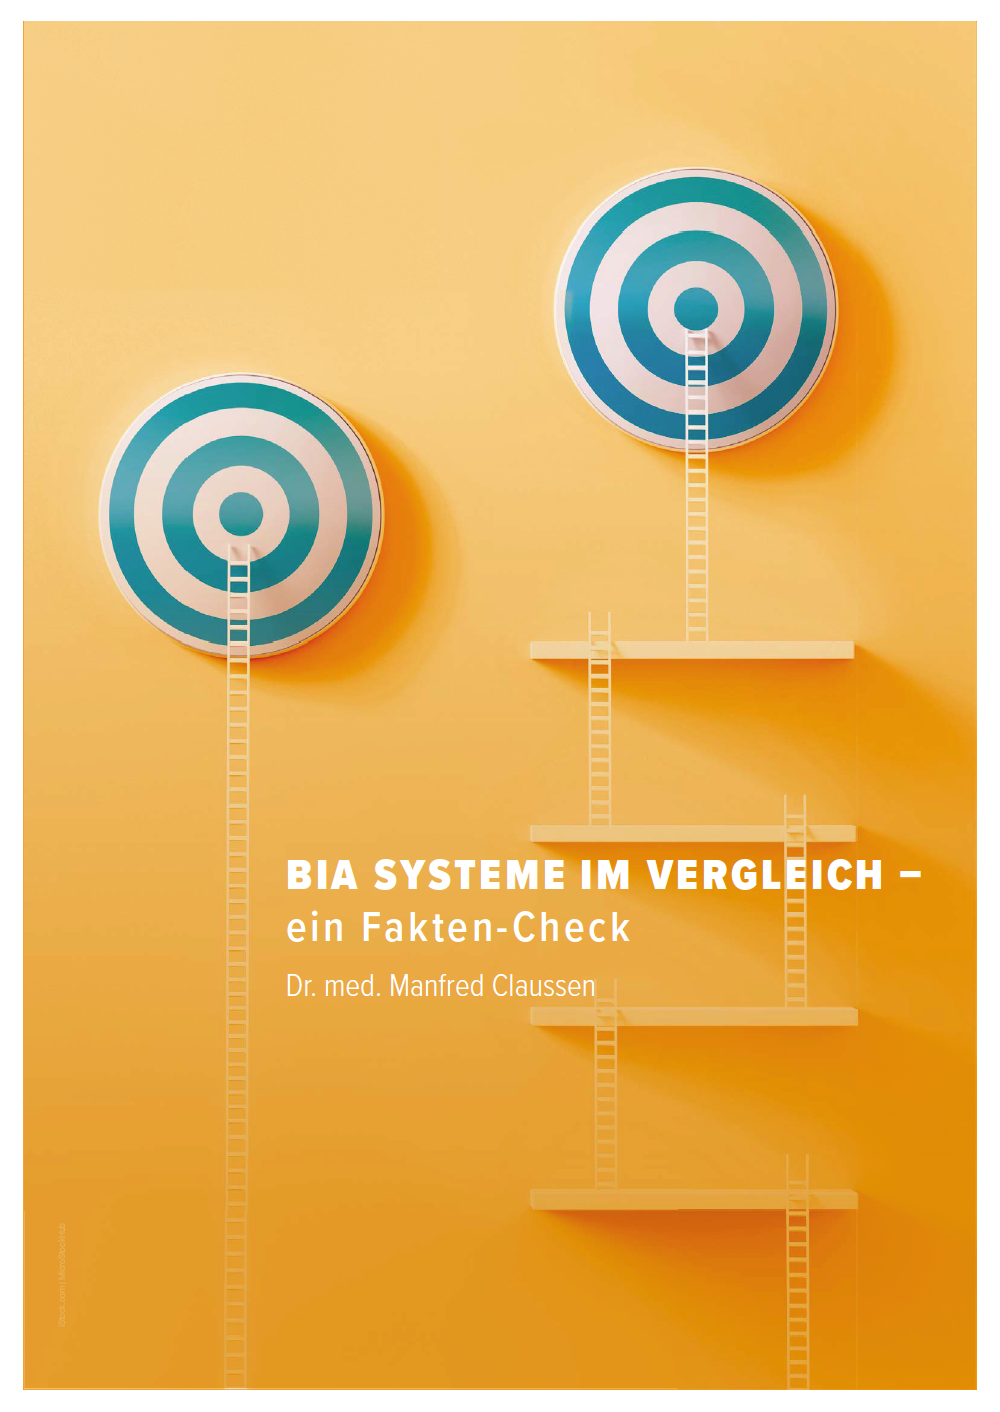 Cover der Broschüren "BIA-Systeme im Vergleich" von Dr. Claussen